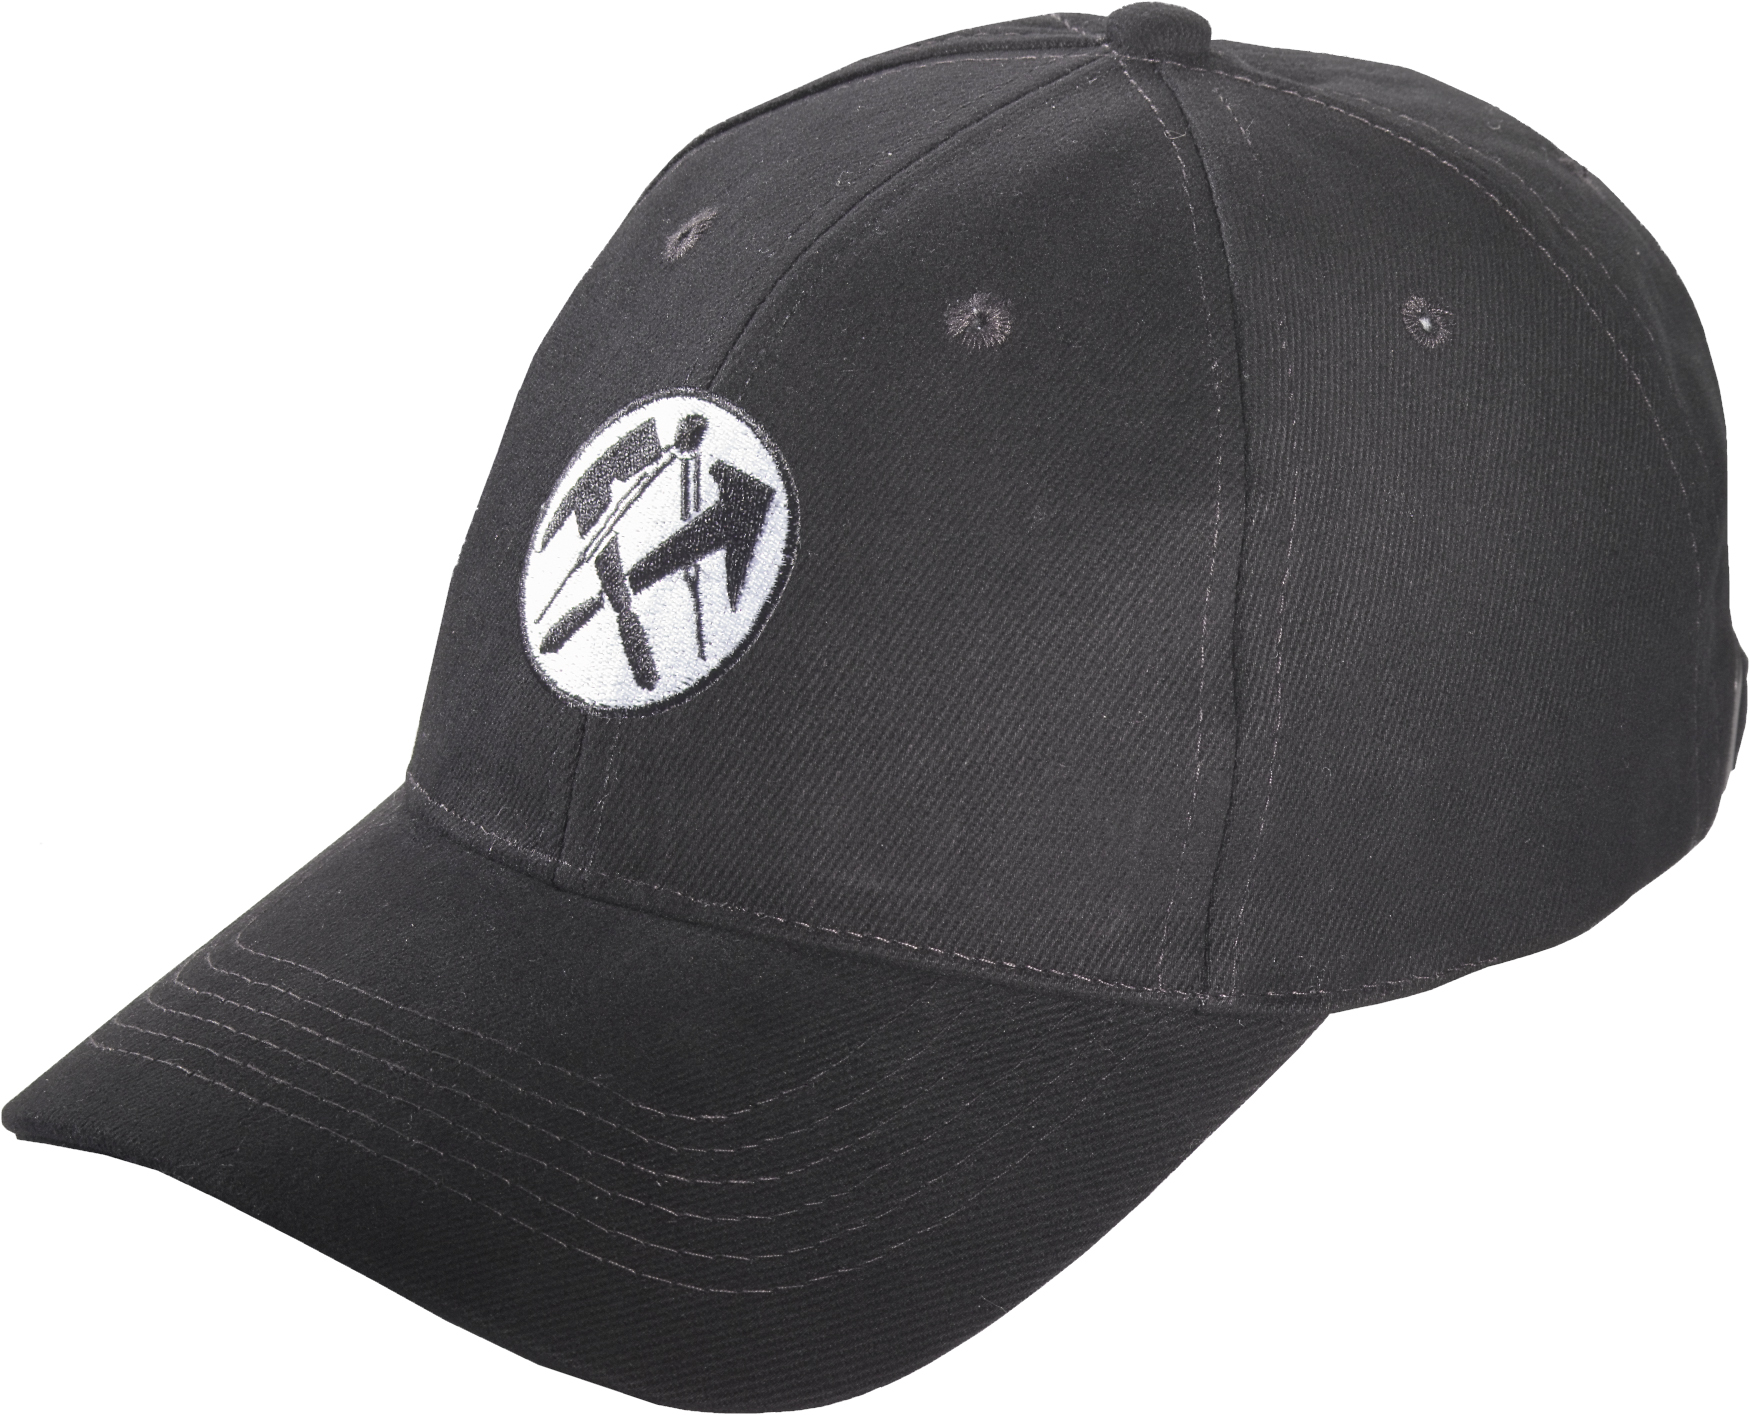 JOB-Cap schwarz mit Dachdecker Emblem gestickt